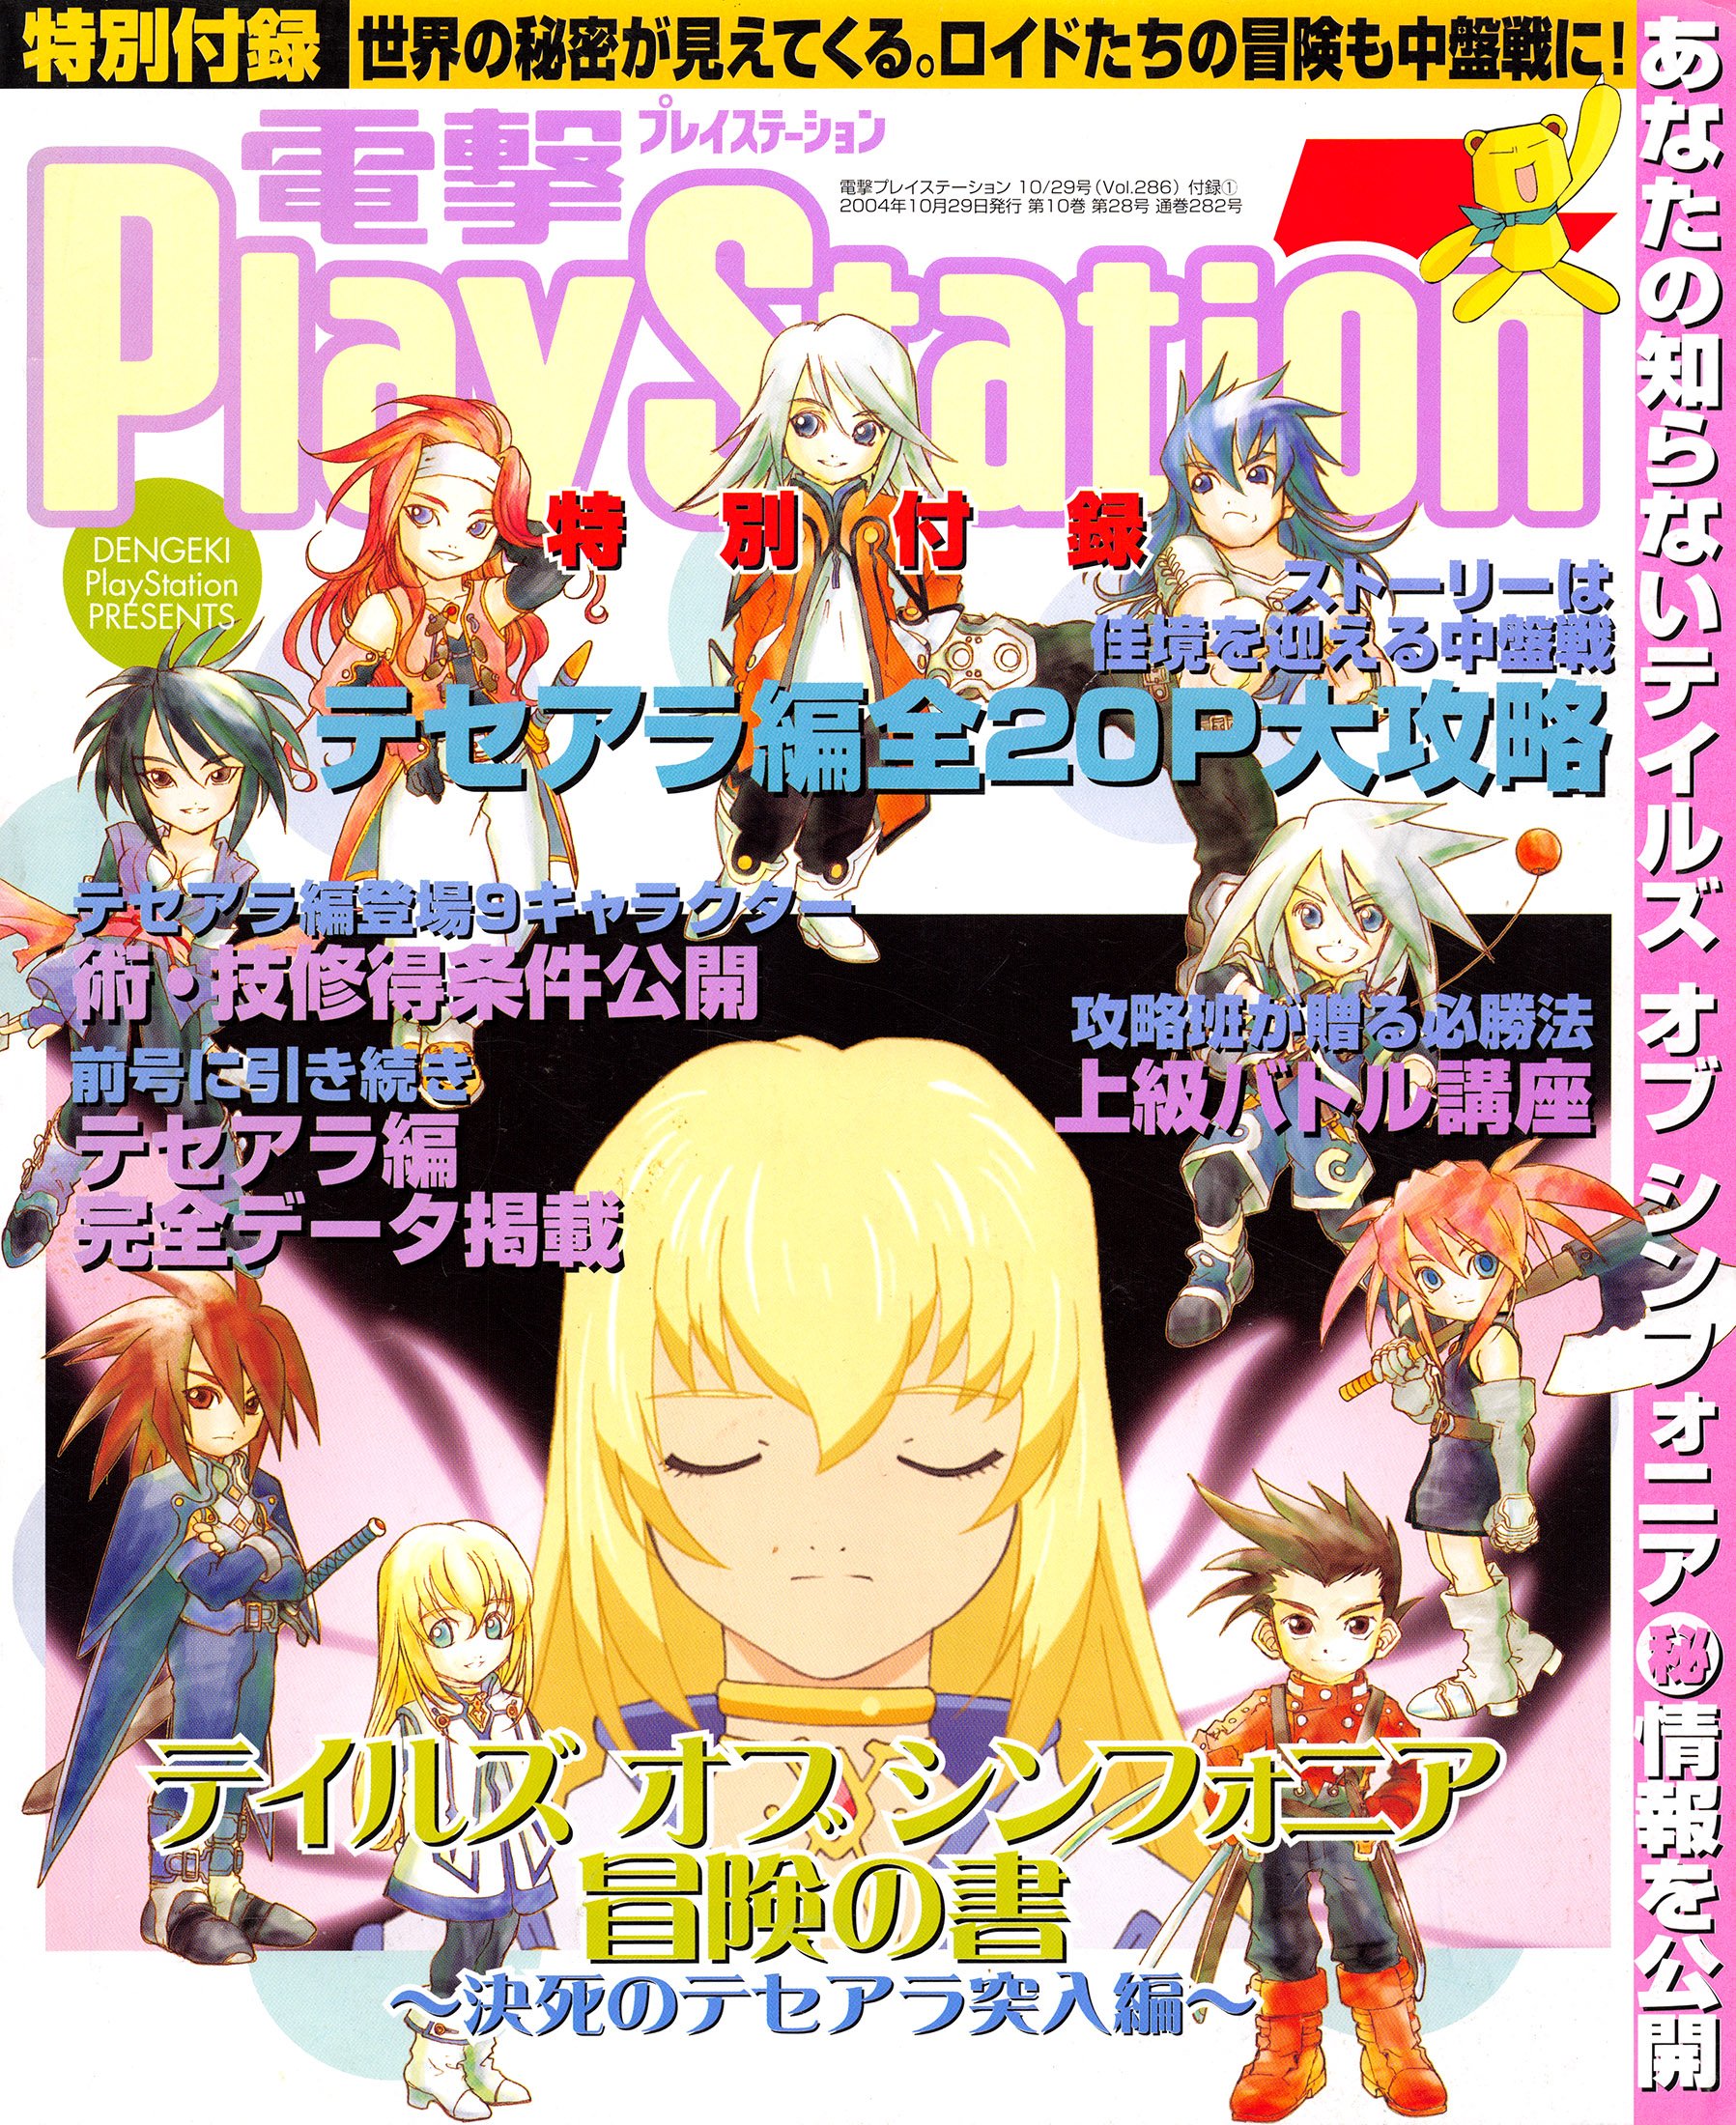 Dengeki PlayStation Presents: Tales of Symphonia - Bouken no Sho (vol.286 supplement) (October 29, 2004)